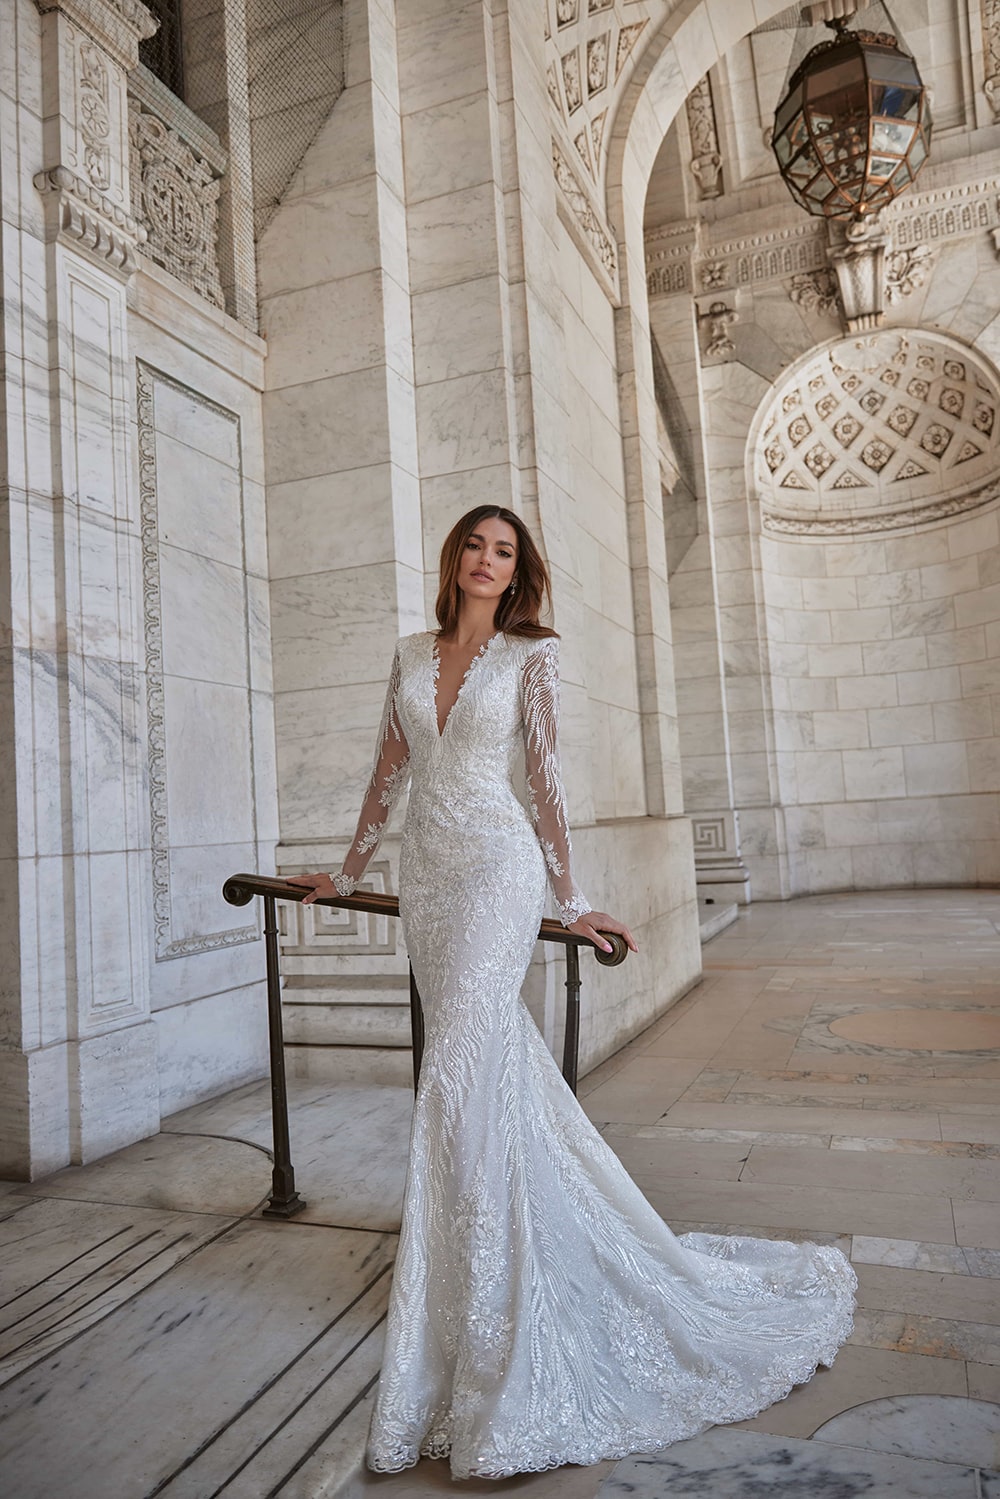 Jordan menyasszonyi ruha - Personality